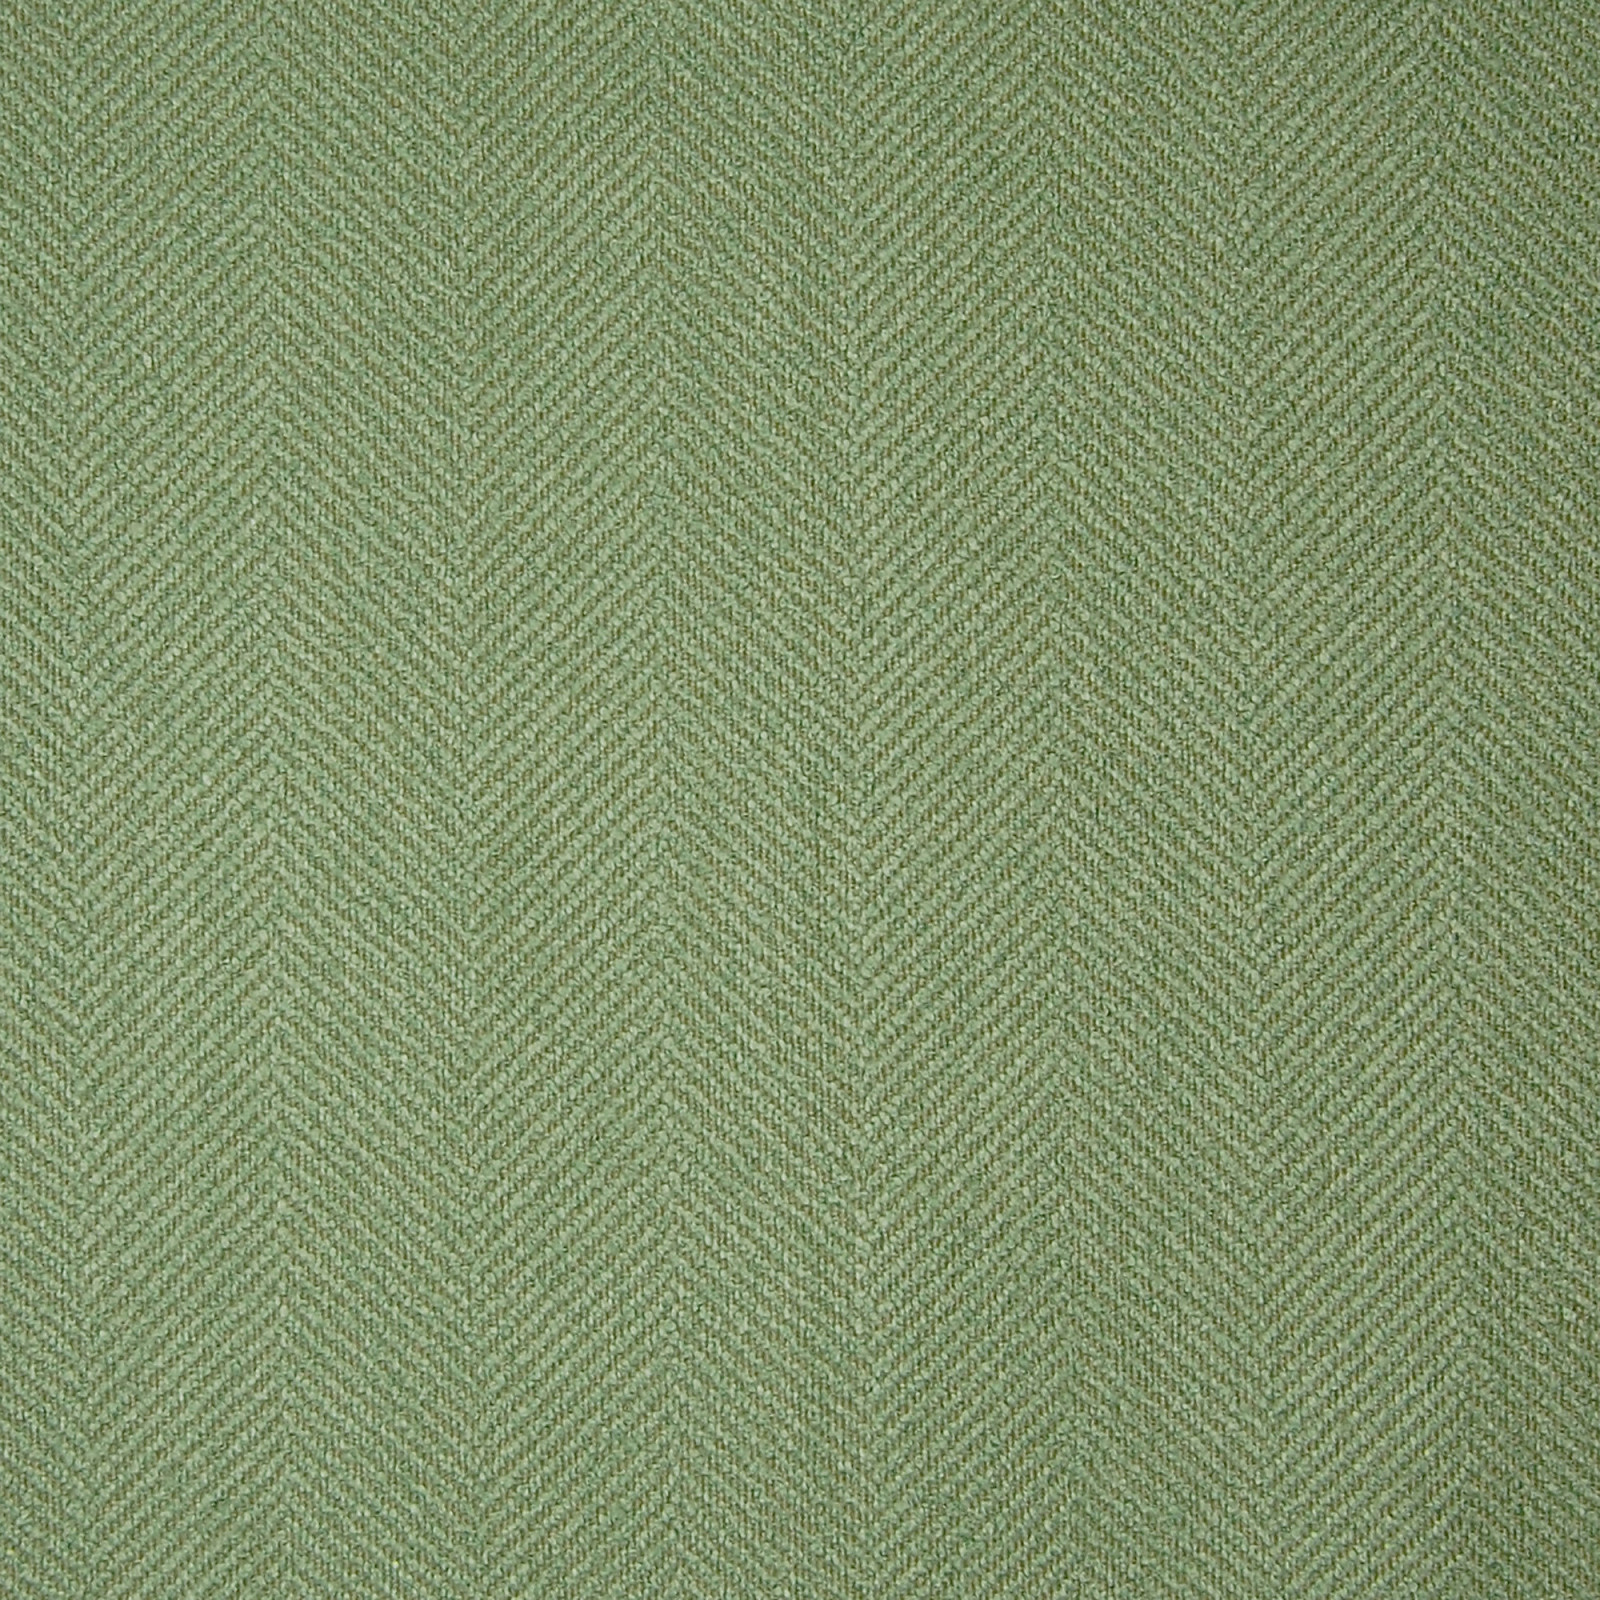 Aloe Green Herringbone Made in USA Upholstery Fabric